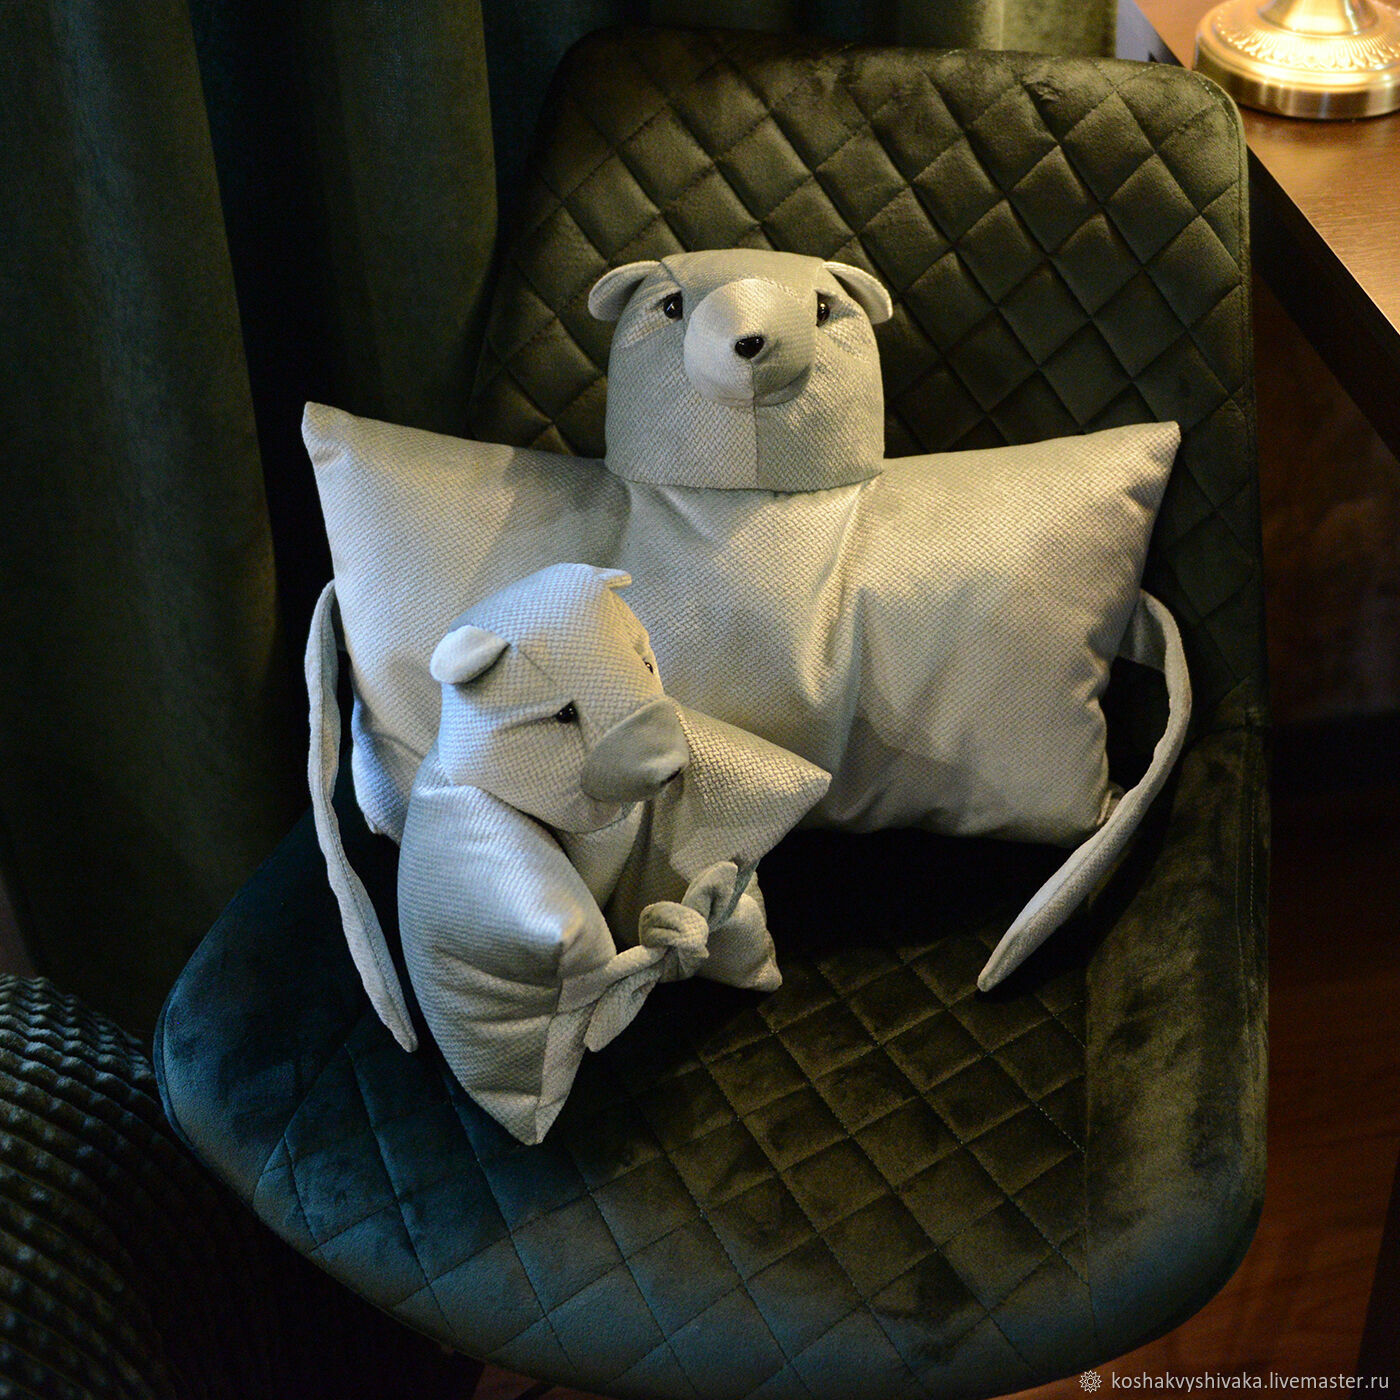 Кресло-качалка с пуфом (глайдер) для мамы, для кормления малыша, в СПб в магазинах Piccolo